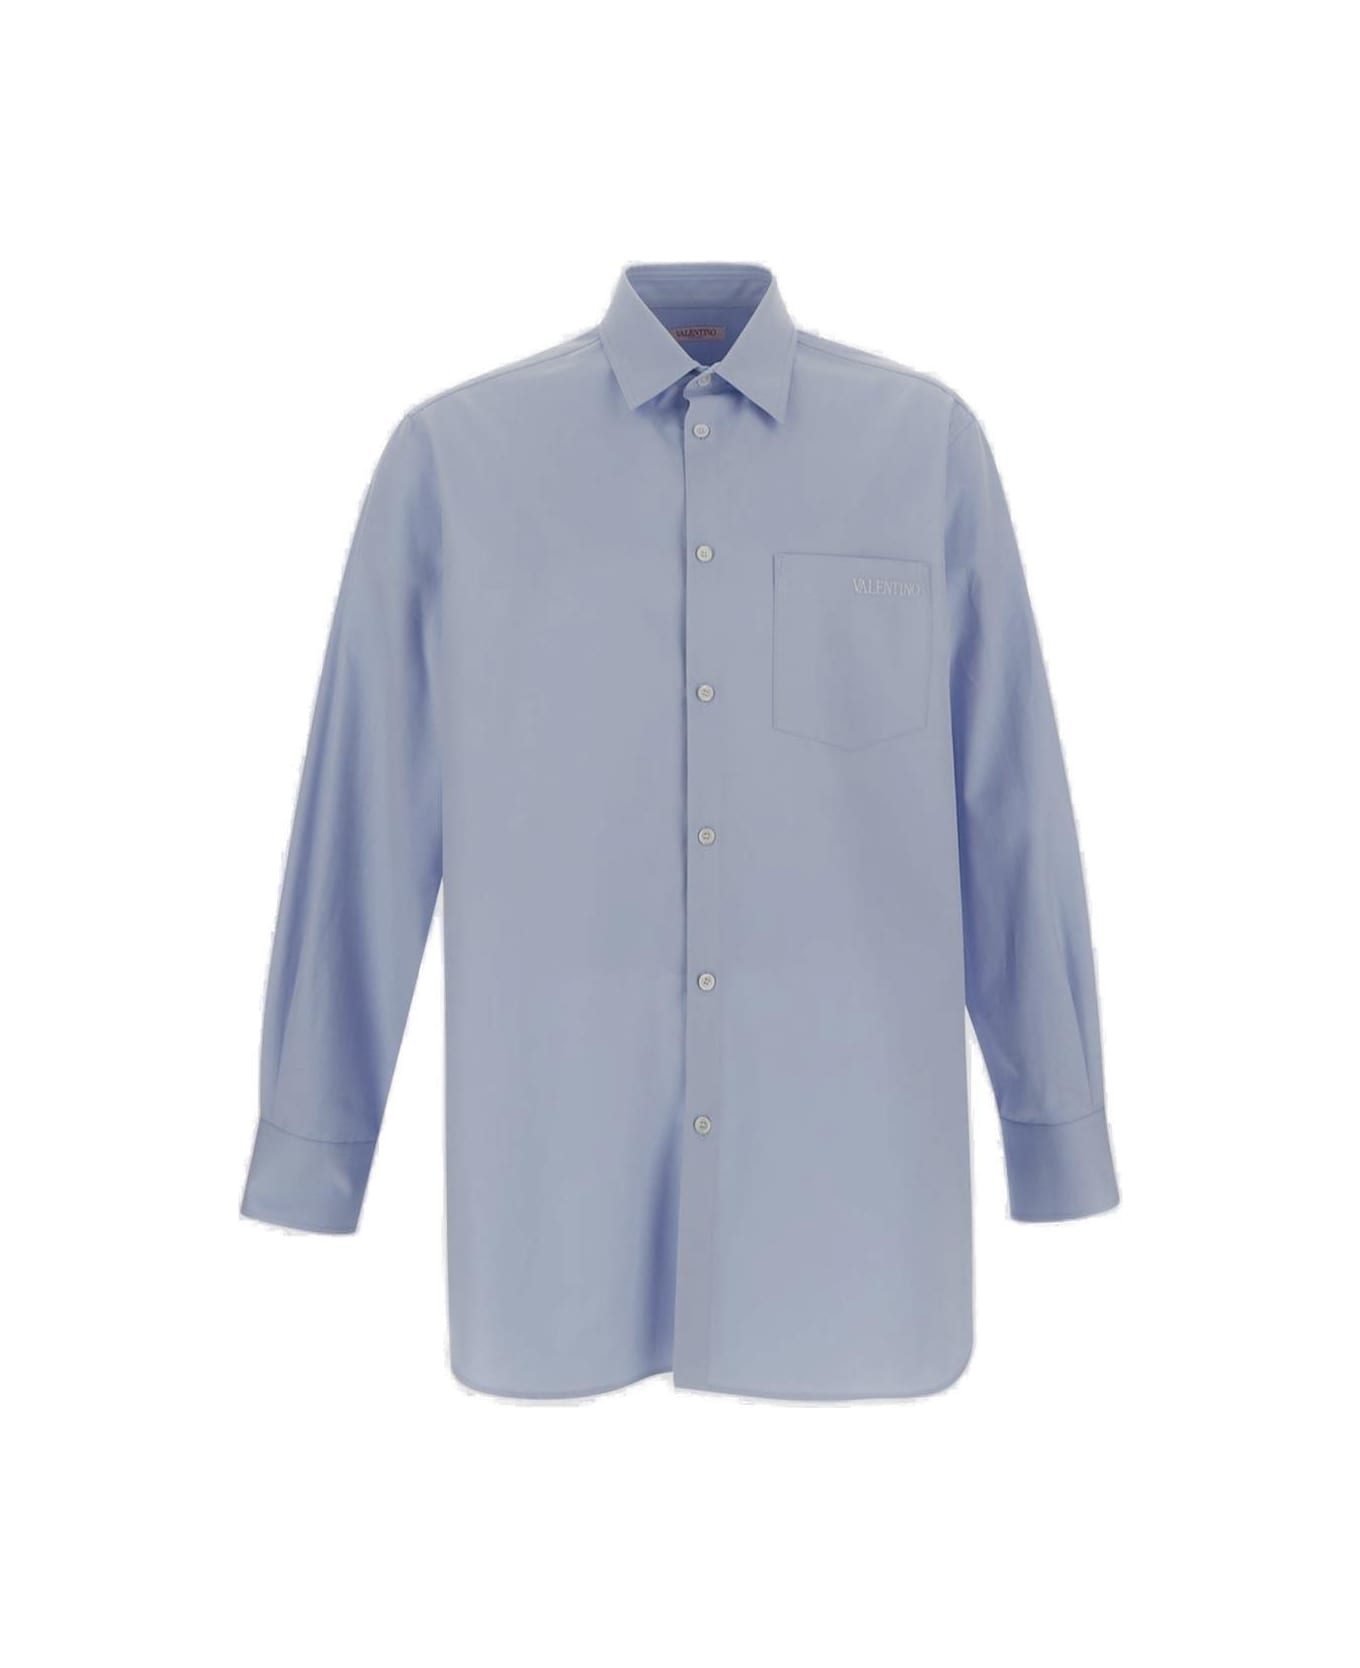 Valentino Classic Chest Pocket Shirt - Azure